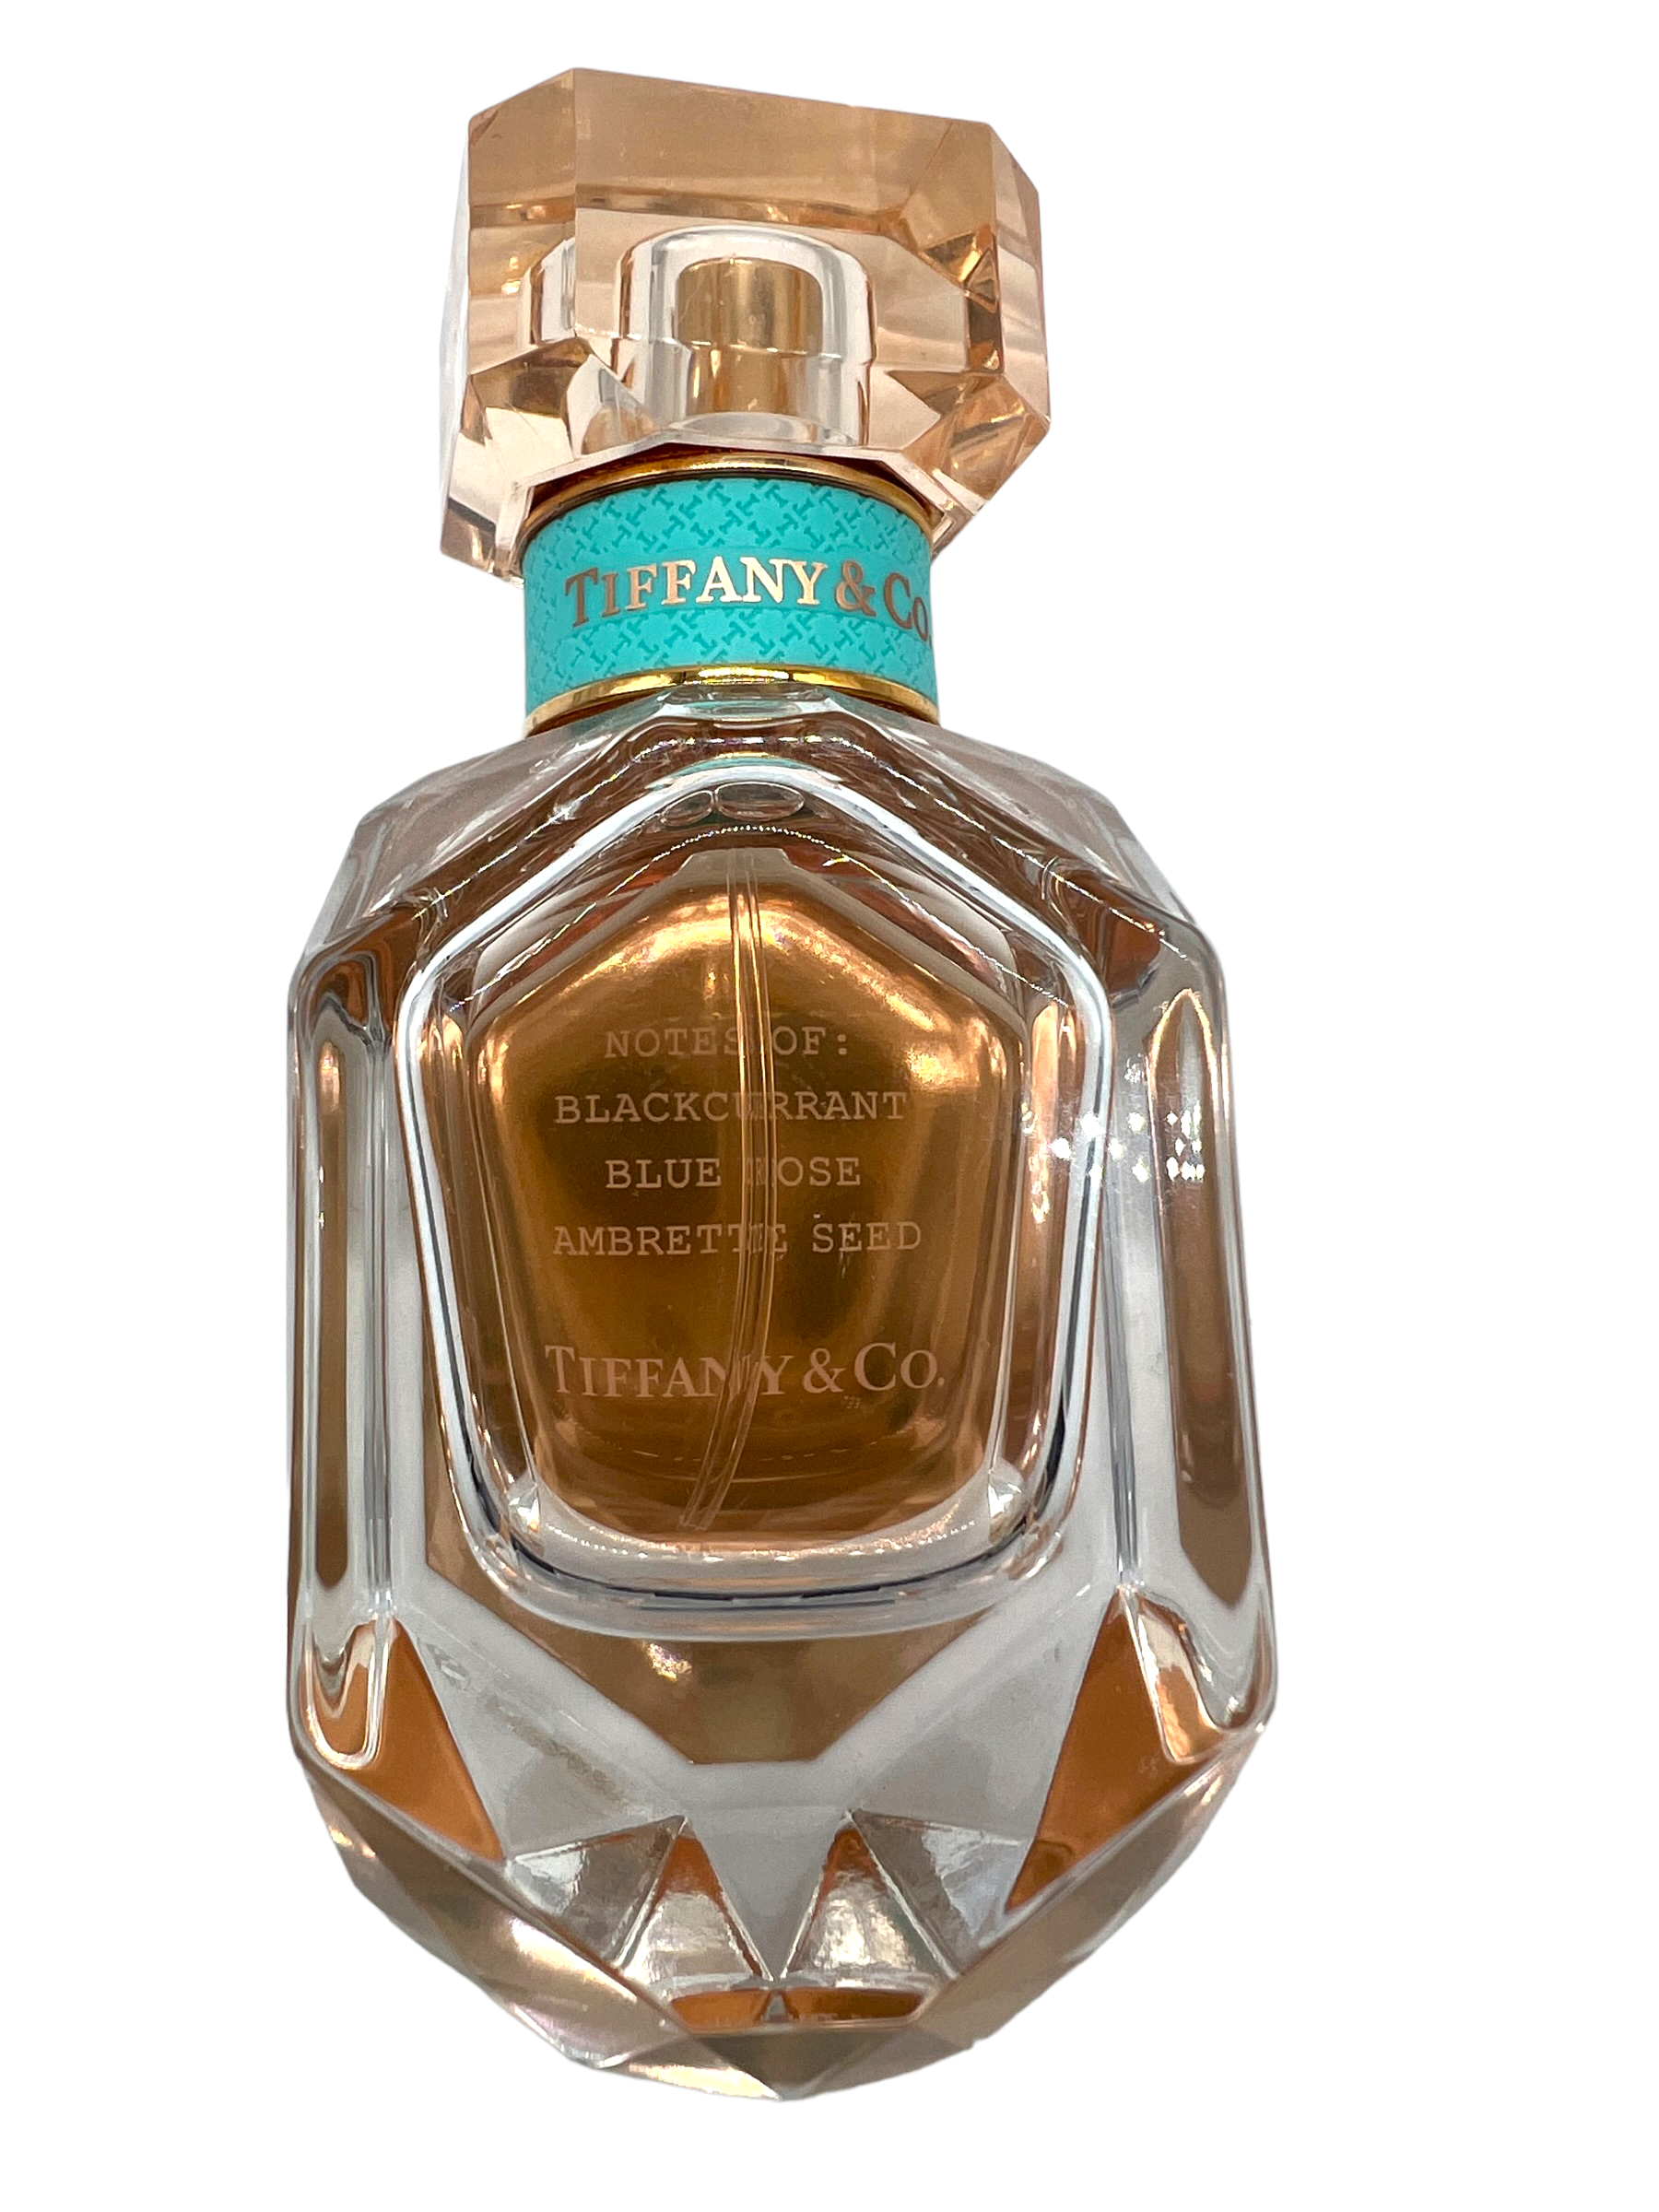 TIFFANY FOR WOMEN - EAU DE PARFUM SPRAY, 2.5 OZ – Fragrance Room